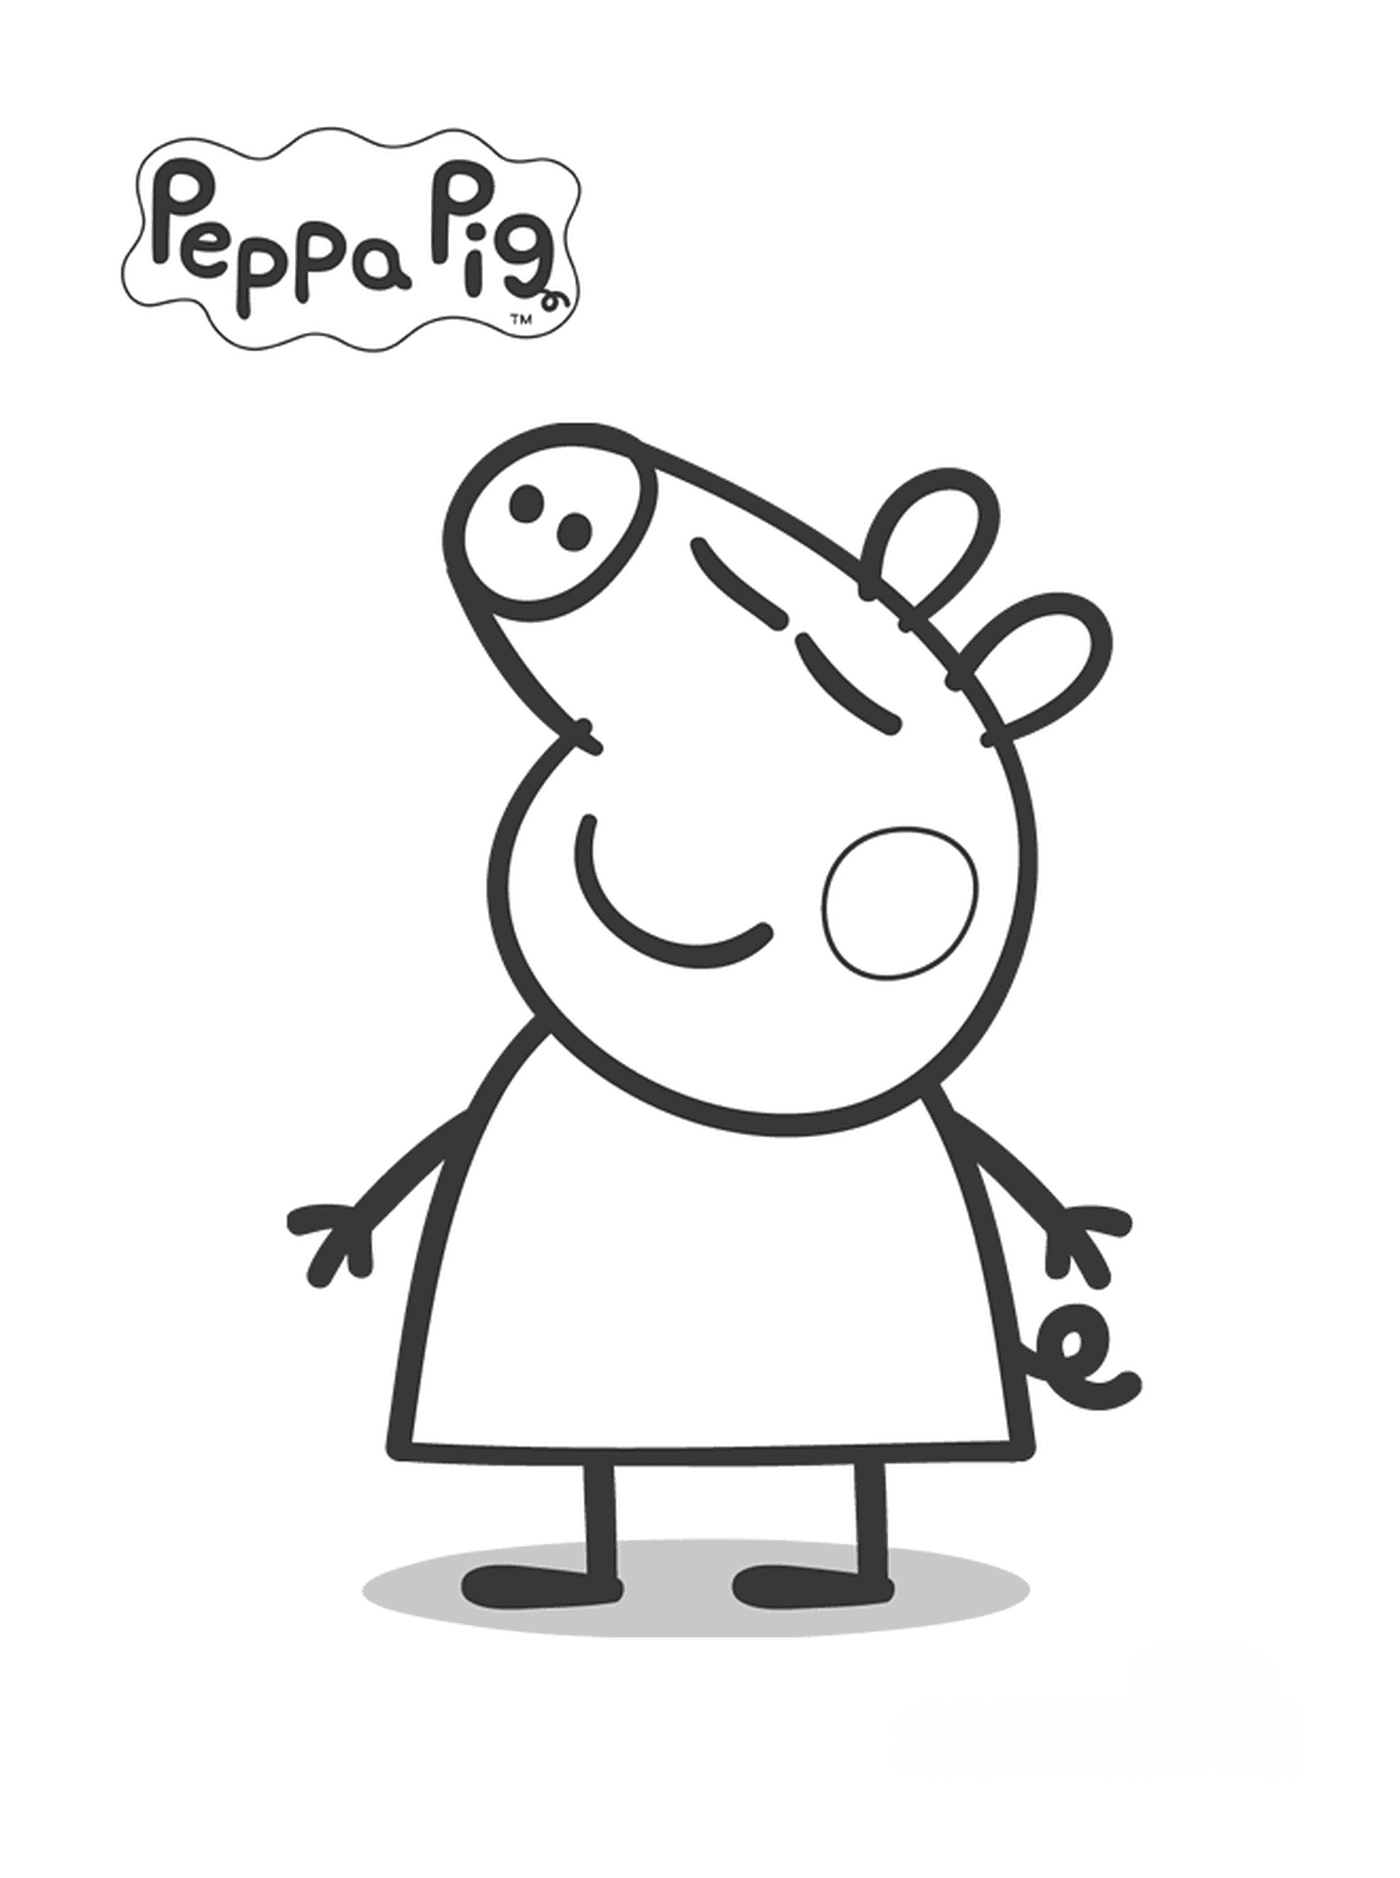  Peppa Pig con una burbuja de pensamiento arriba 